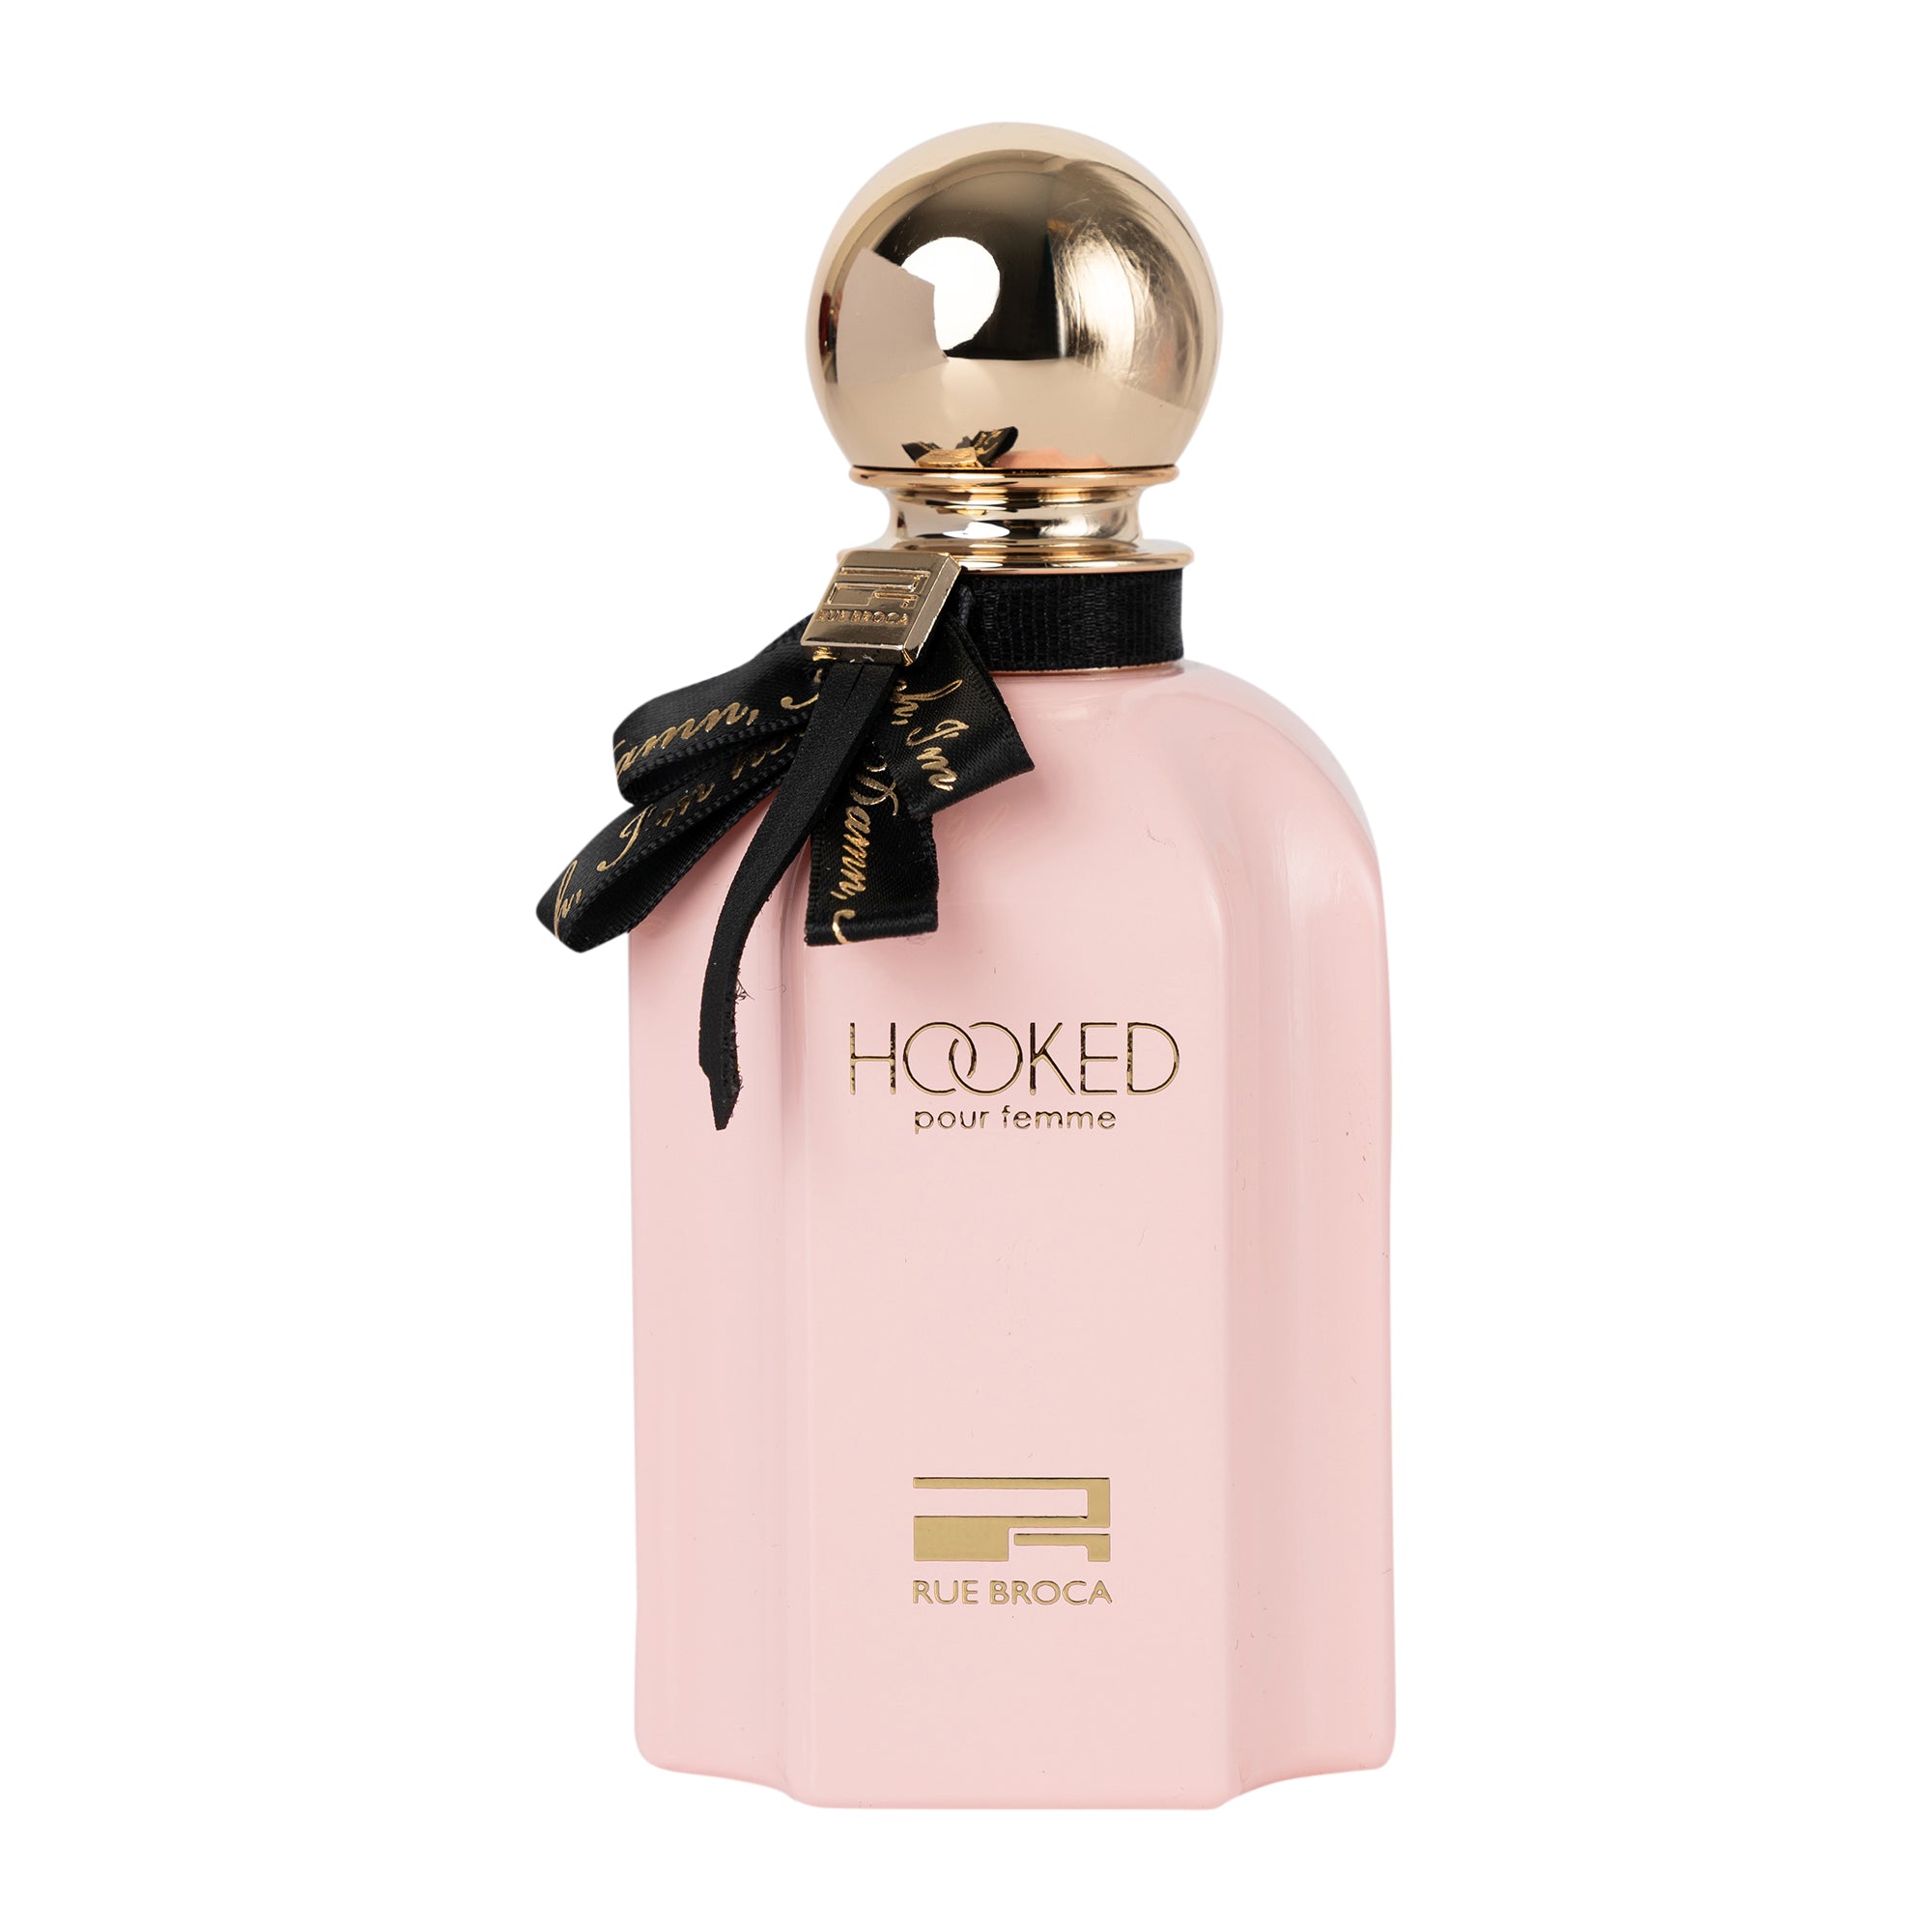 Rue Broca Hooked Pour Femme Eau de Parfum 100ml